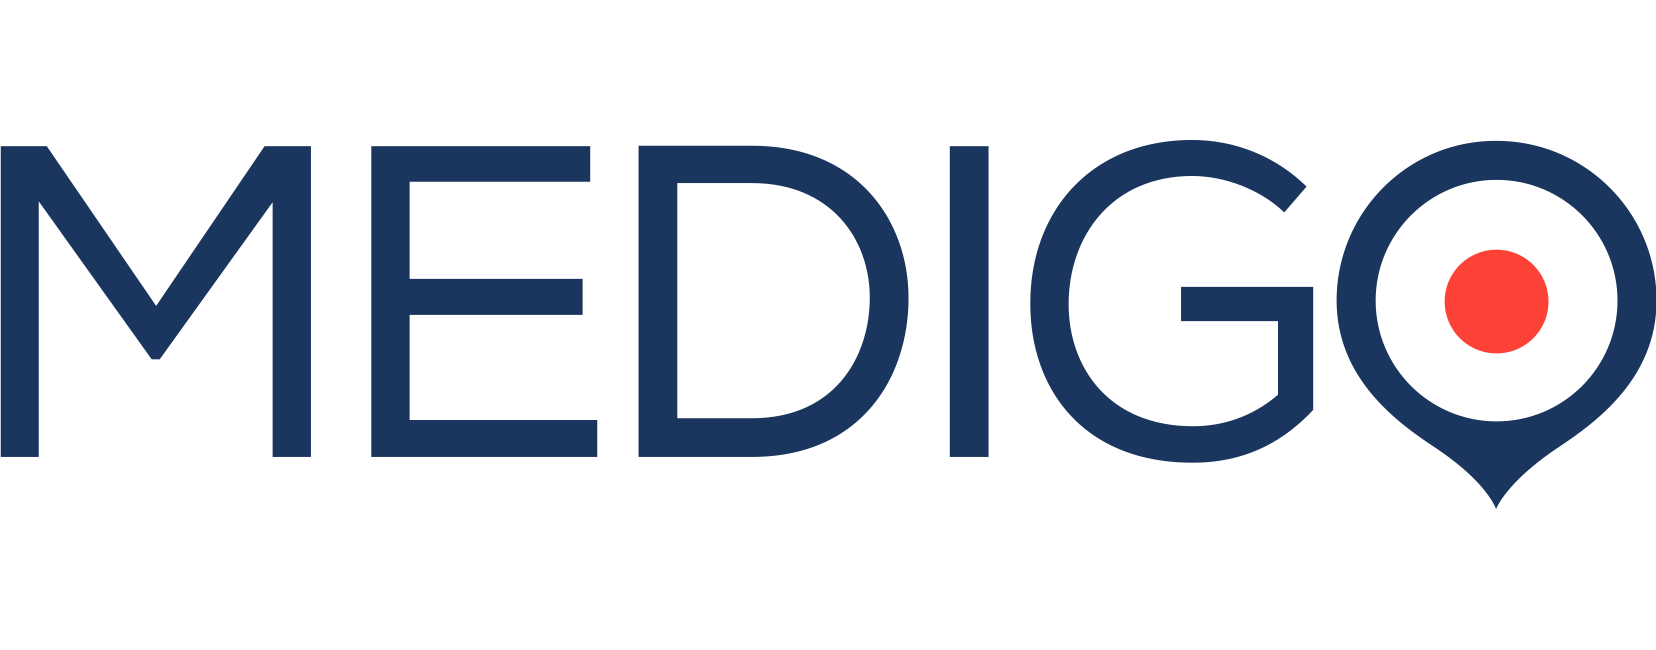 Medigo Logo